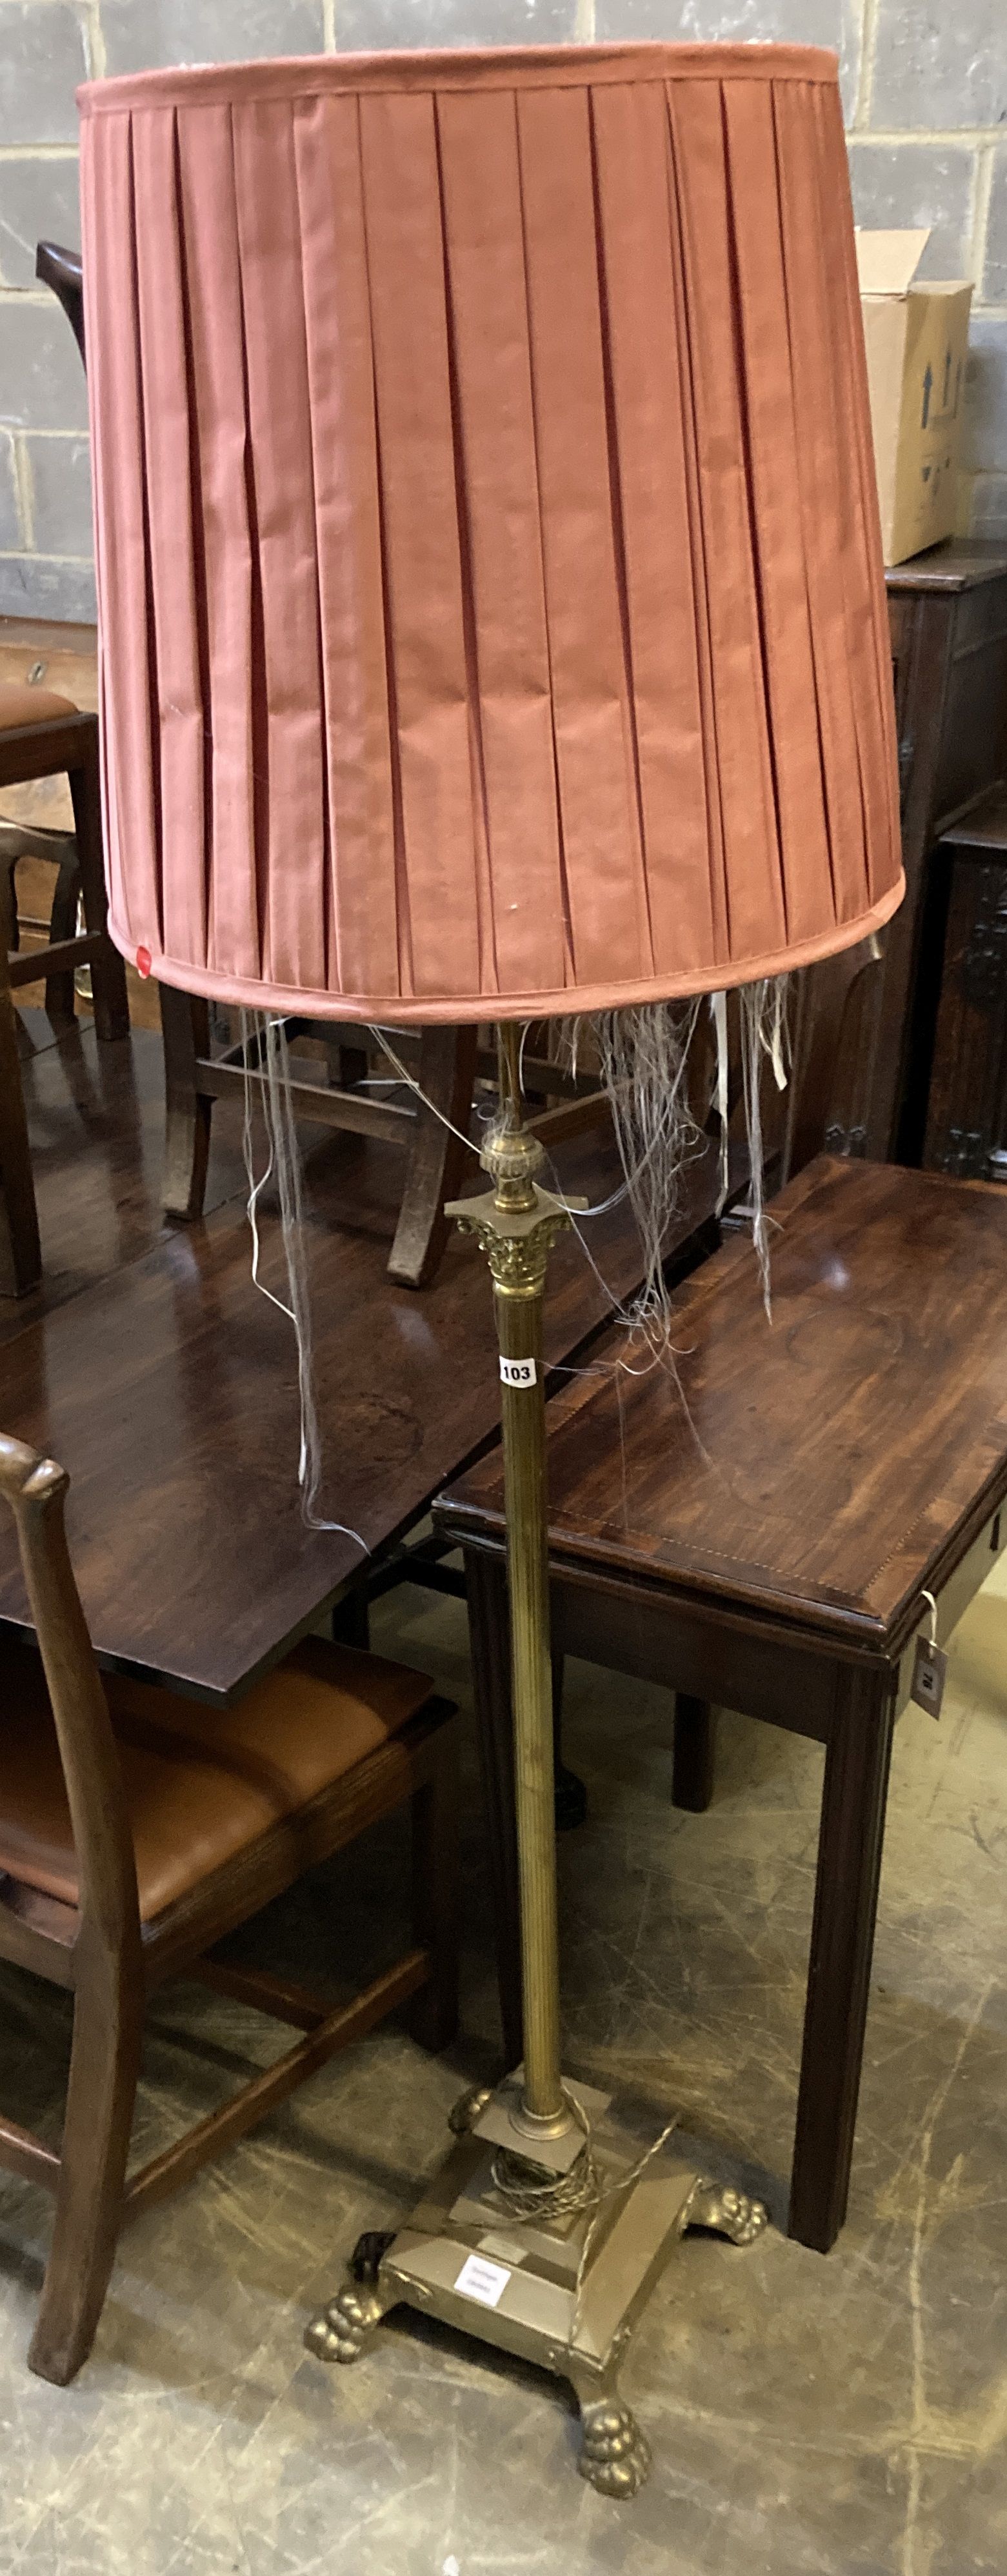 A brass Corinthian column adjustable standard lamp